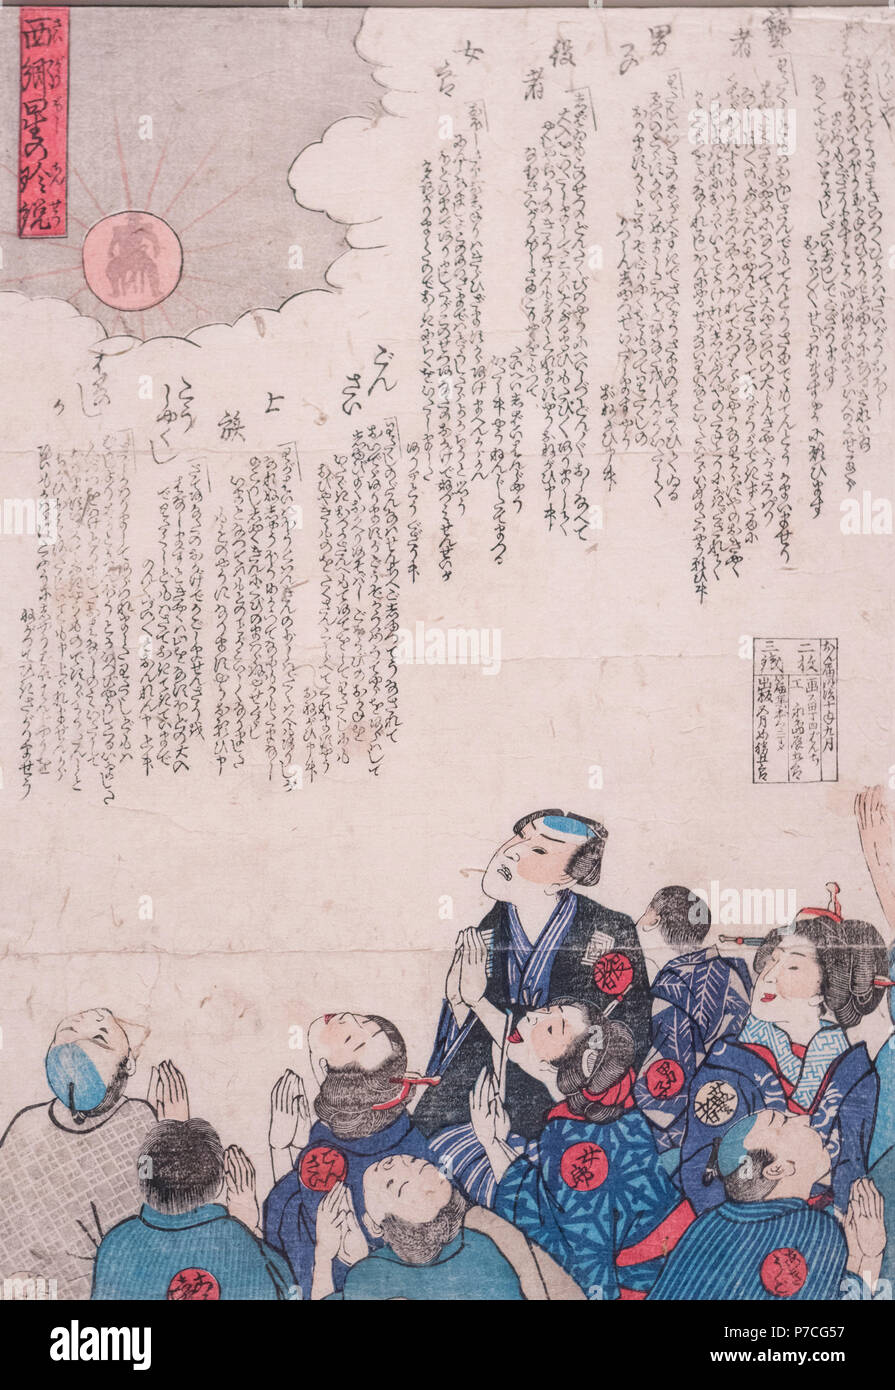 Saigo boshi keine chinsetsu (eine seltene Geschichte von Saigo star) 1877, von Utagawa Yoshitora, privaten Sammlung. Saigo boshi bedeutet "Der letzte Stern" in Japanisch. 1877, Saigo Takamori starb in Satsuma Rebellion. In diesem Jahr, die Mars hatte, in der Nähe der Erde und starkes Licht emittiert. Dann das Gerücht, dass Saigo Takamori im Stern zu sehen war verteilt wurde. Viele Bilder wurden in diesem Incident verknüpft ist. Stockfoto